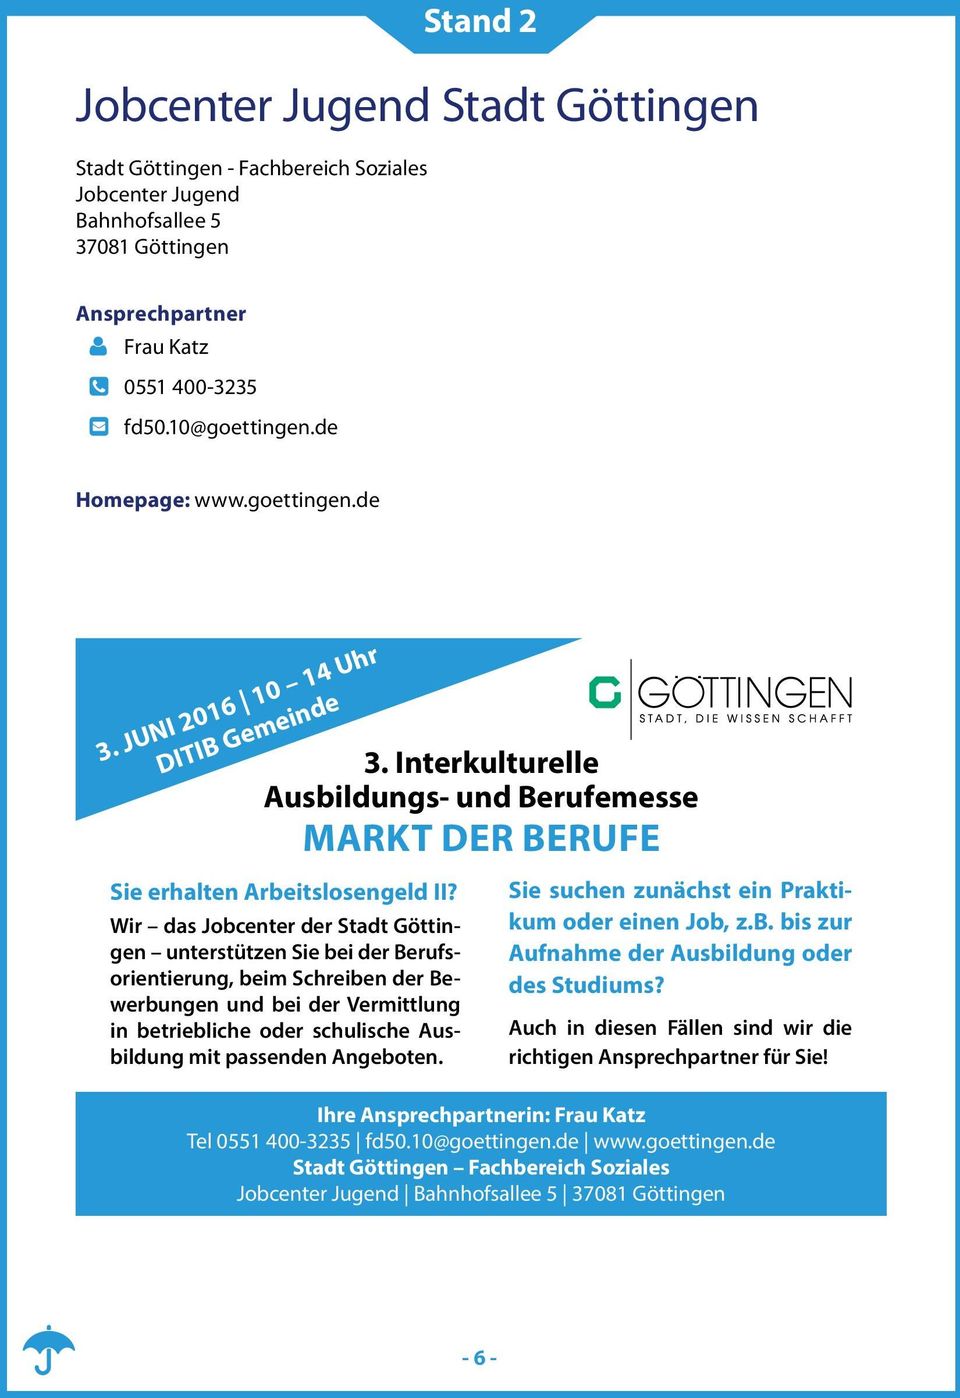 Wir das Jobcenter der Stadt Göttingen unterstützen Sie bei der Berufsorientierung, beim Schreiben der Bewerbungen und bei der Vermittlung in betriebliche oder schulische Ausbildung mit passenden